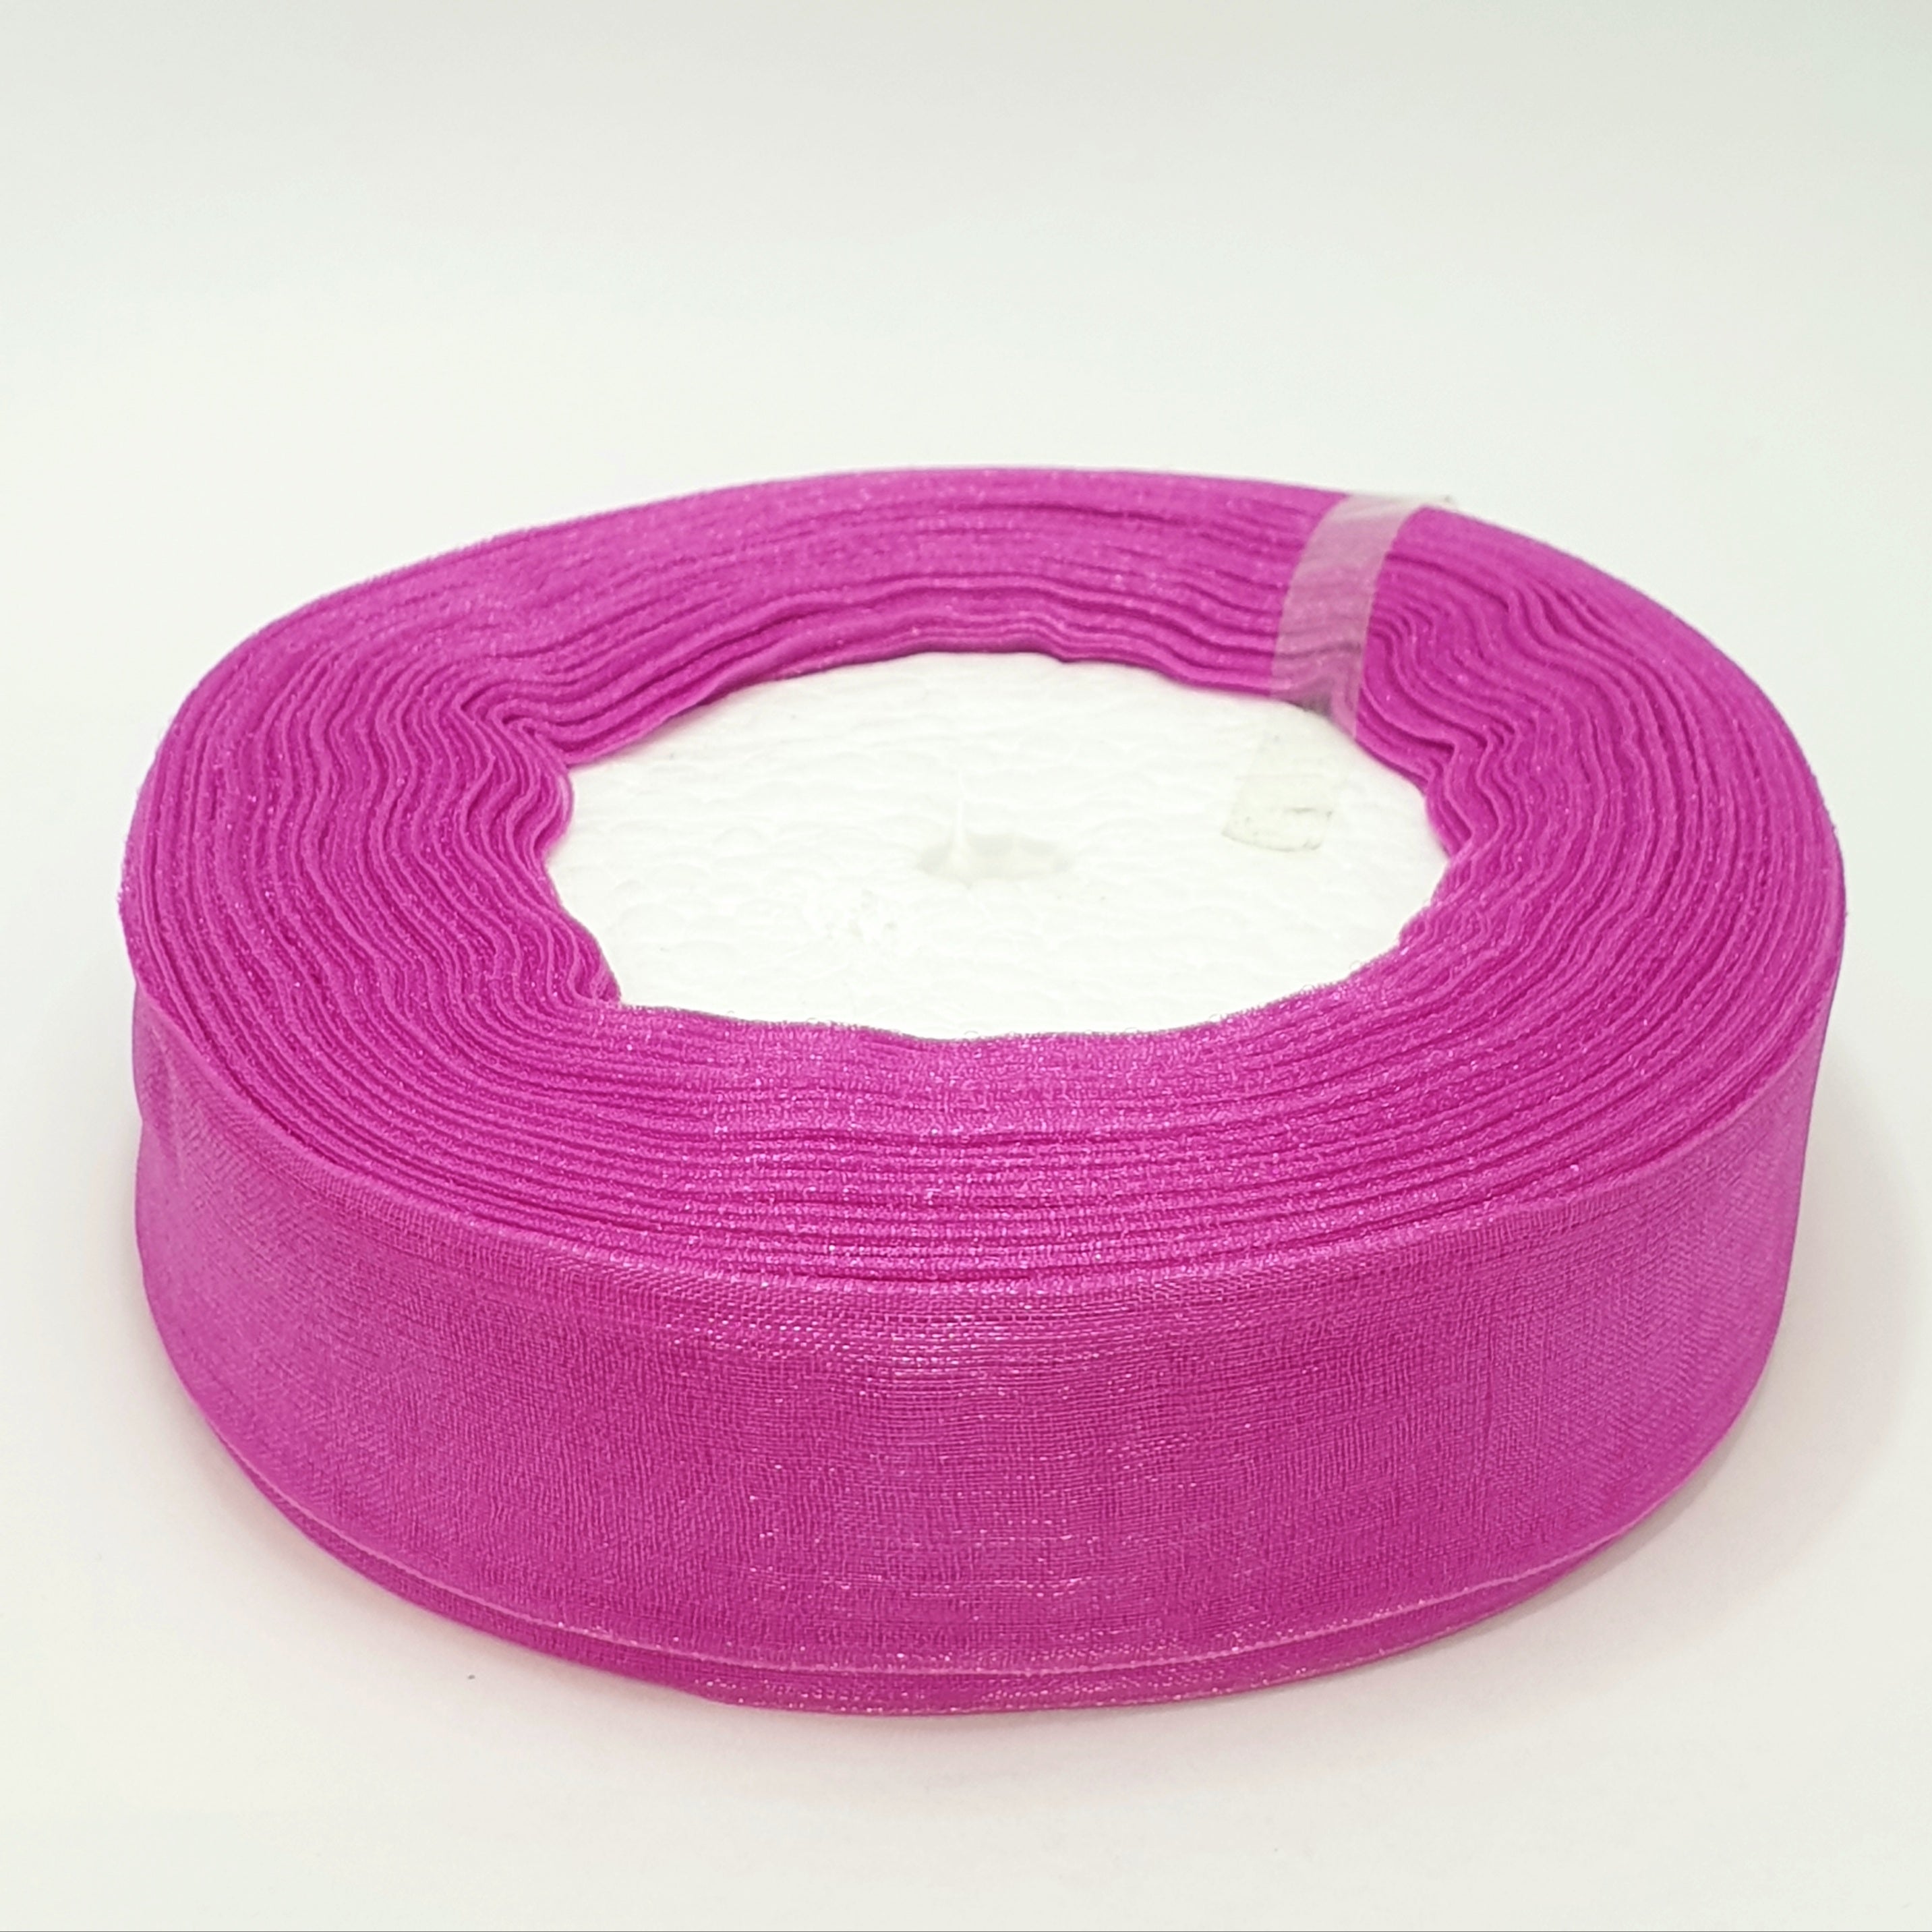 MajorCrafts 25mm 45metres Sheer Organza Fabric Ribbon Roll Pink Shade R1169